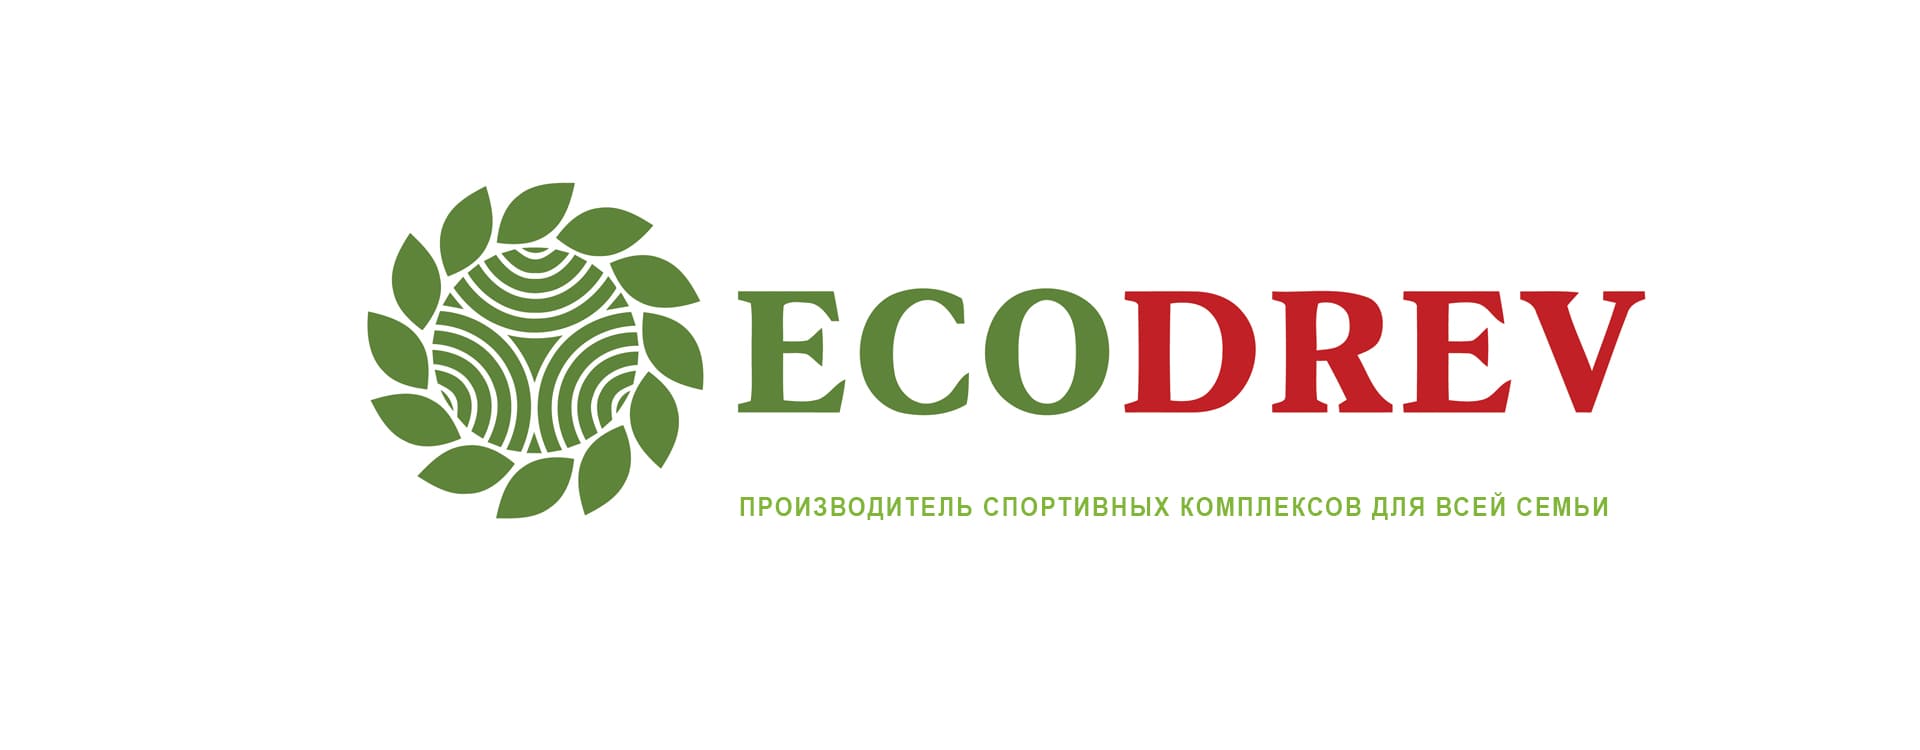 Детские комплексы для дома/квартиры/улицы от "Ecodrev" со скидкой 5%